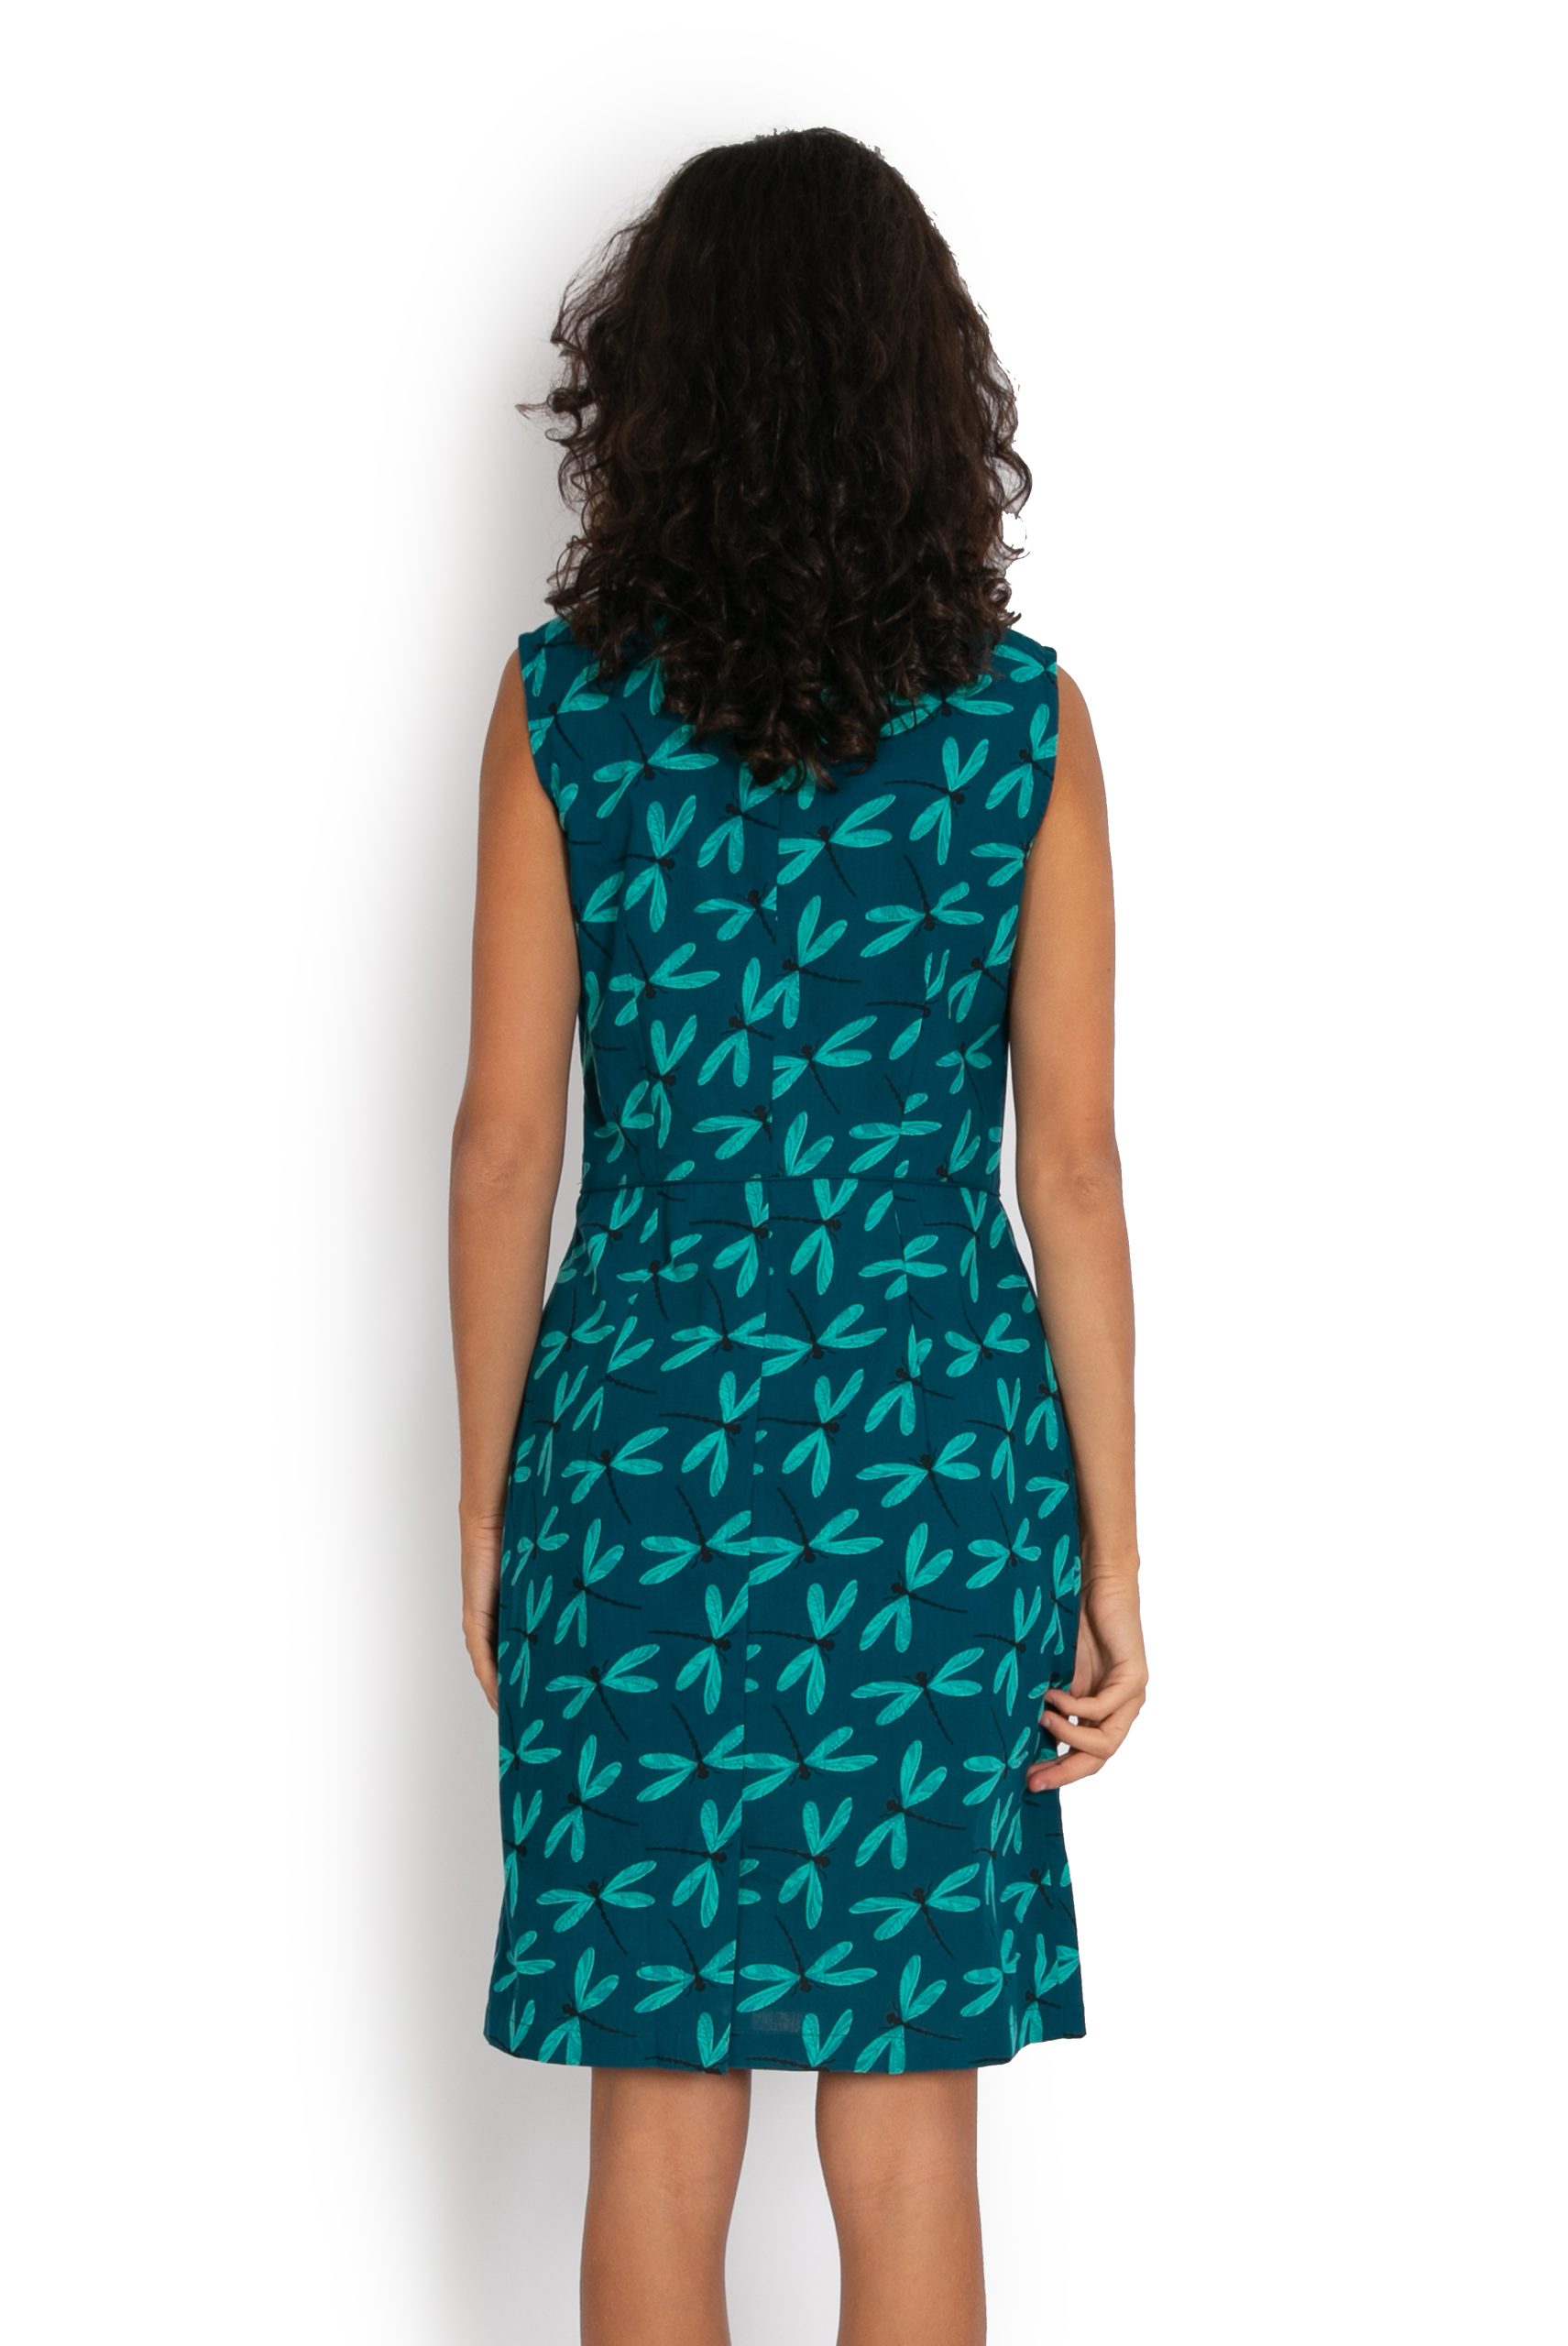 Sydney Dress - Dragonfly Blue - OM Designs